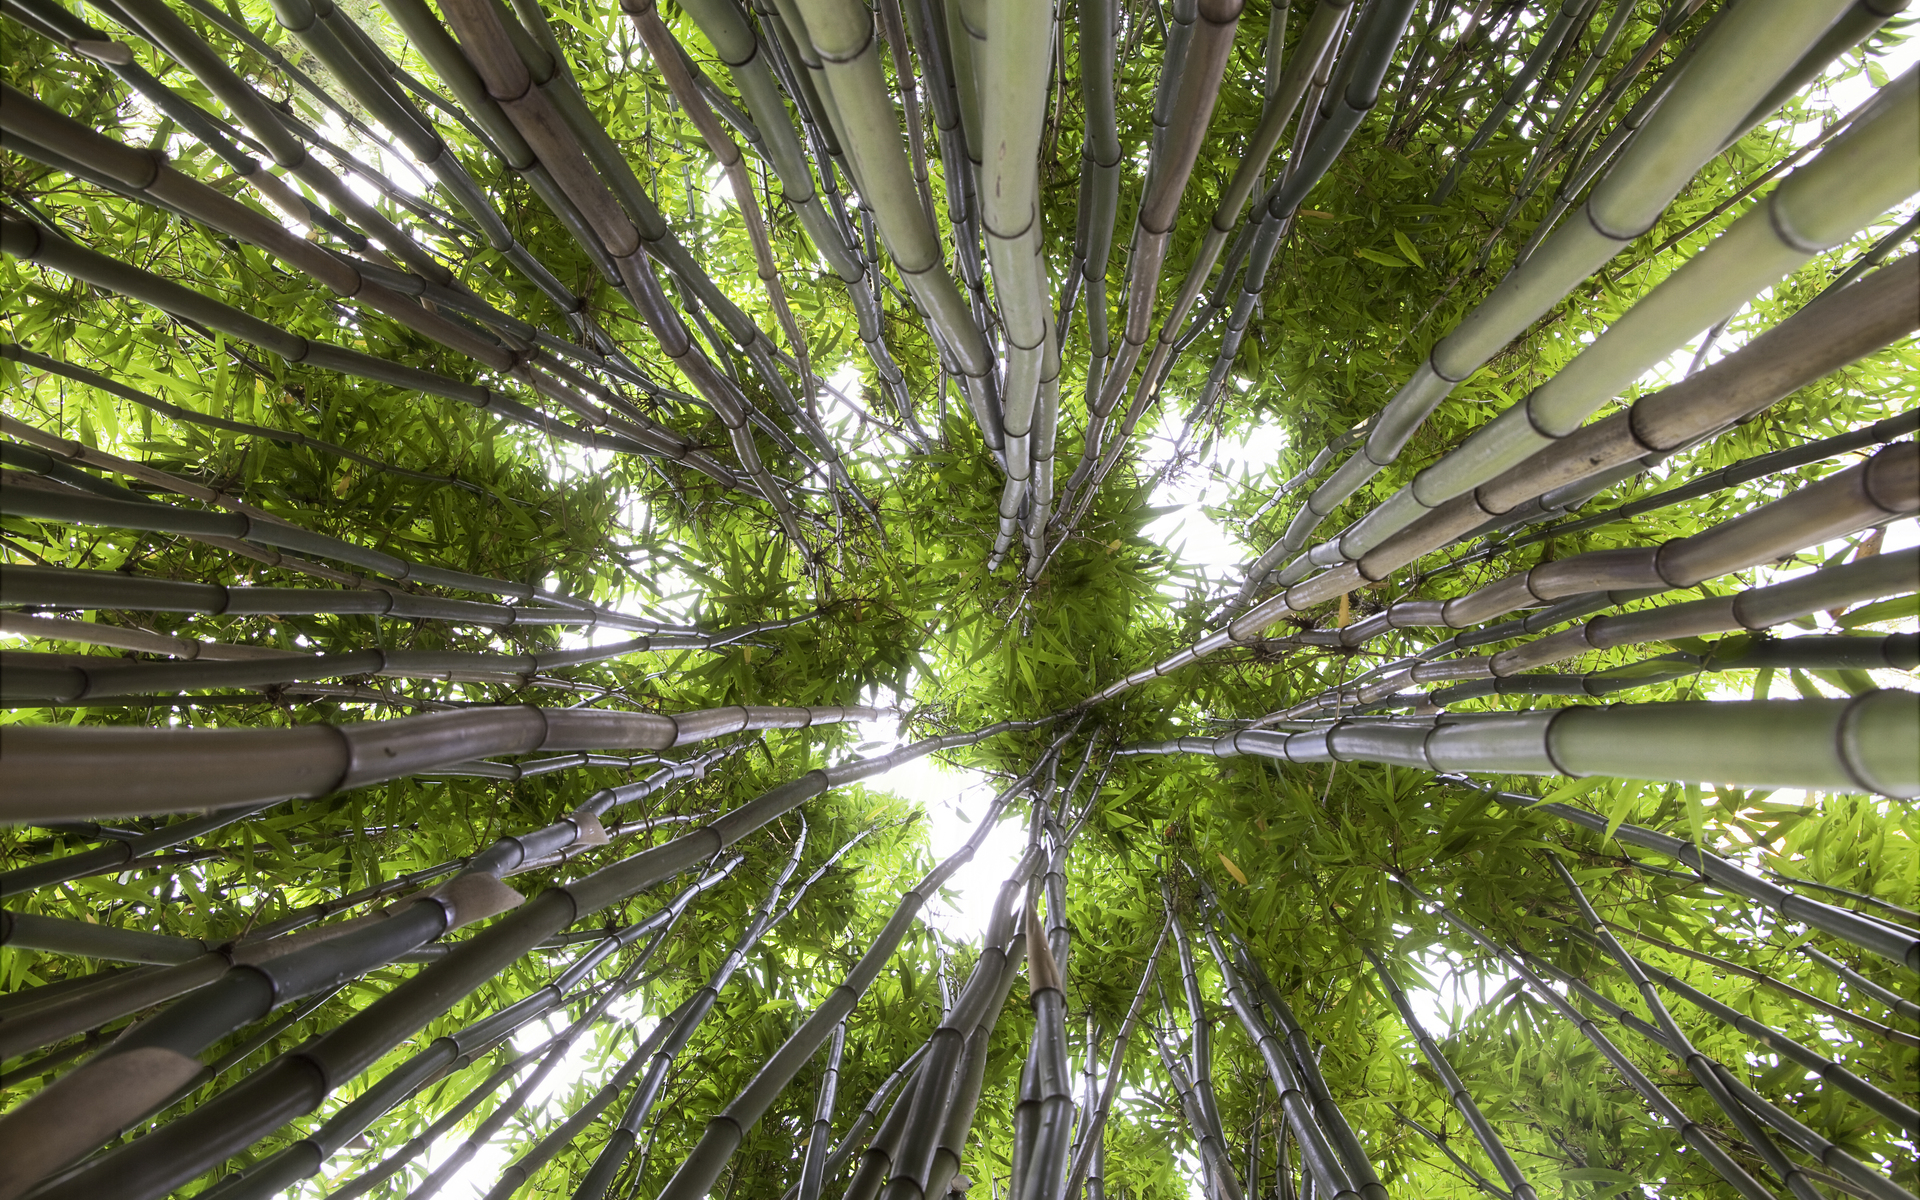 Descarga gratuita de fondo de pantalla para móvil de Naturaleza, Bosque, Bambú, Tierra/naturaleza.